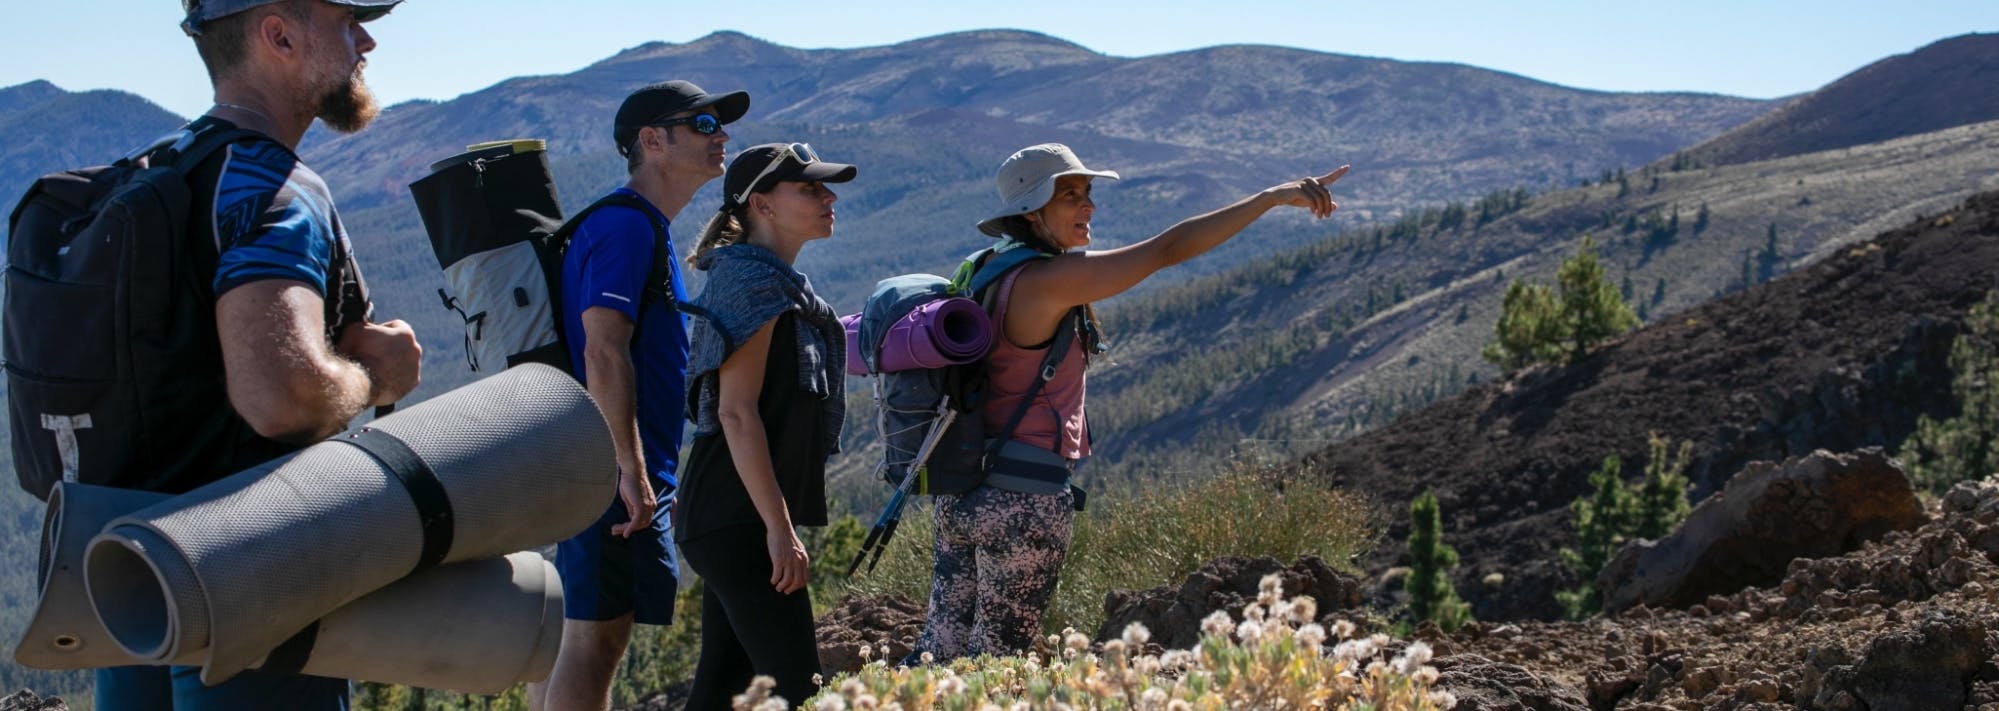 Wycieczka piesza do Parku Narodowego Teneryfy Teide z zajęciami wellness